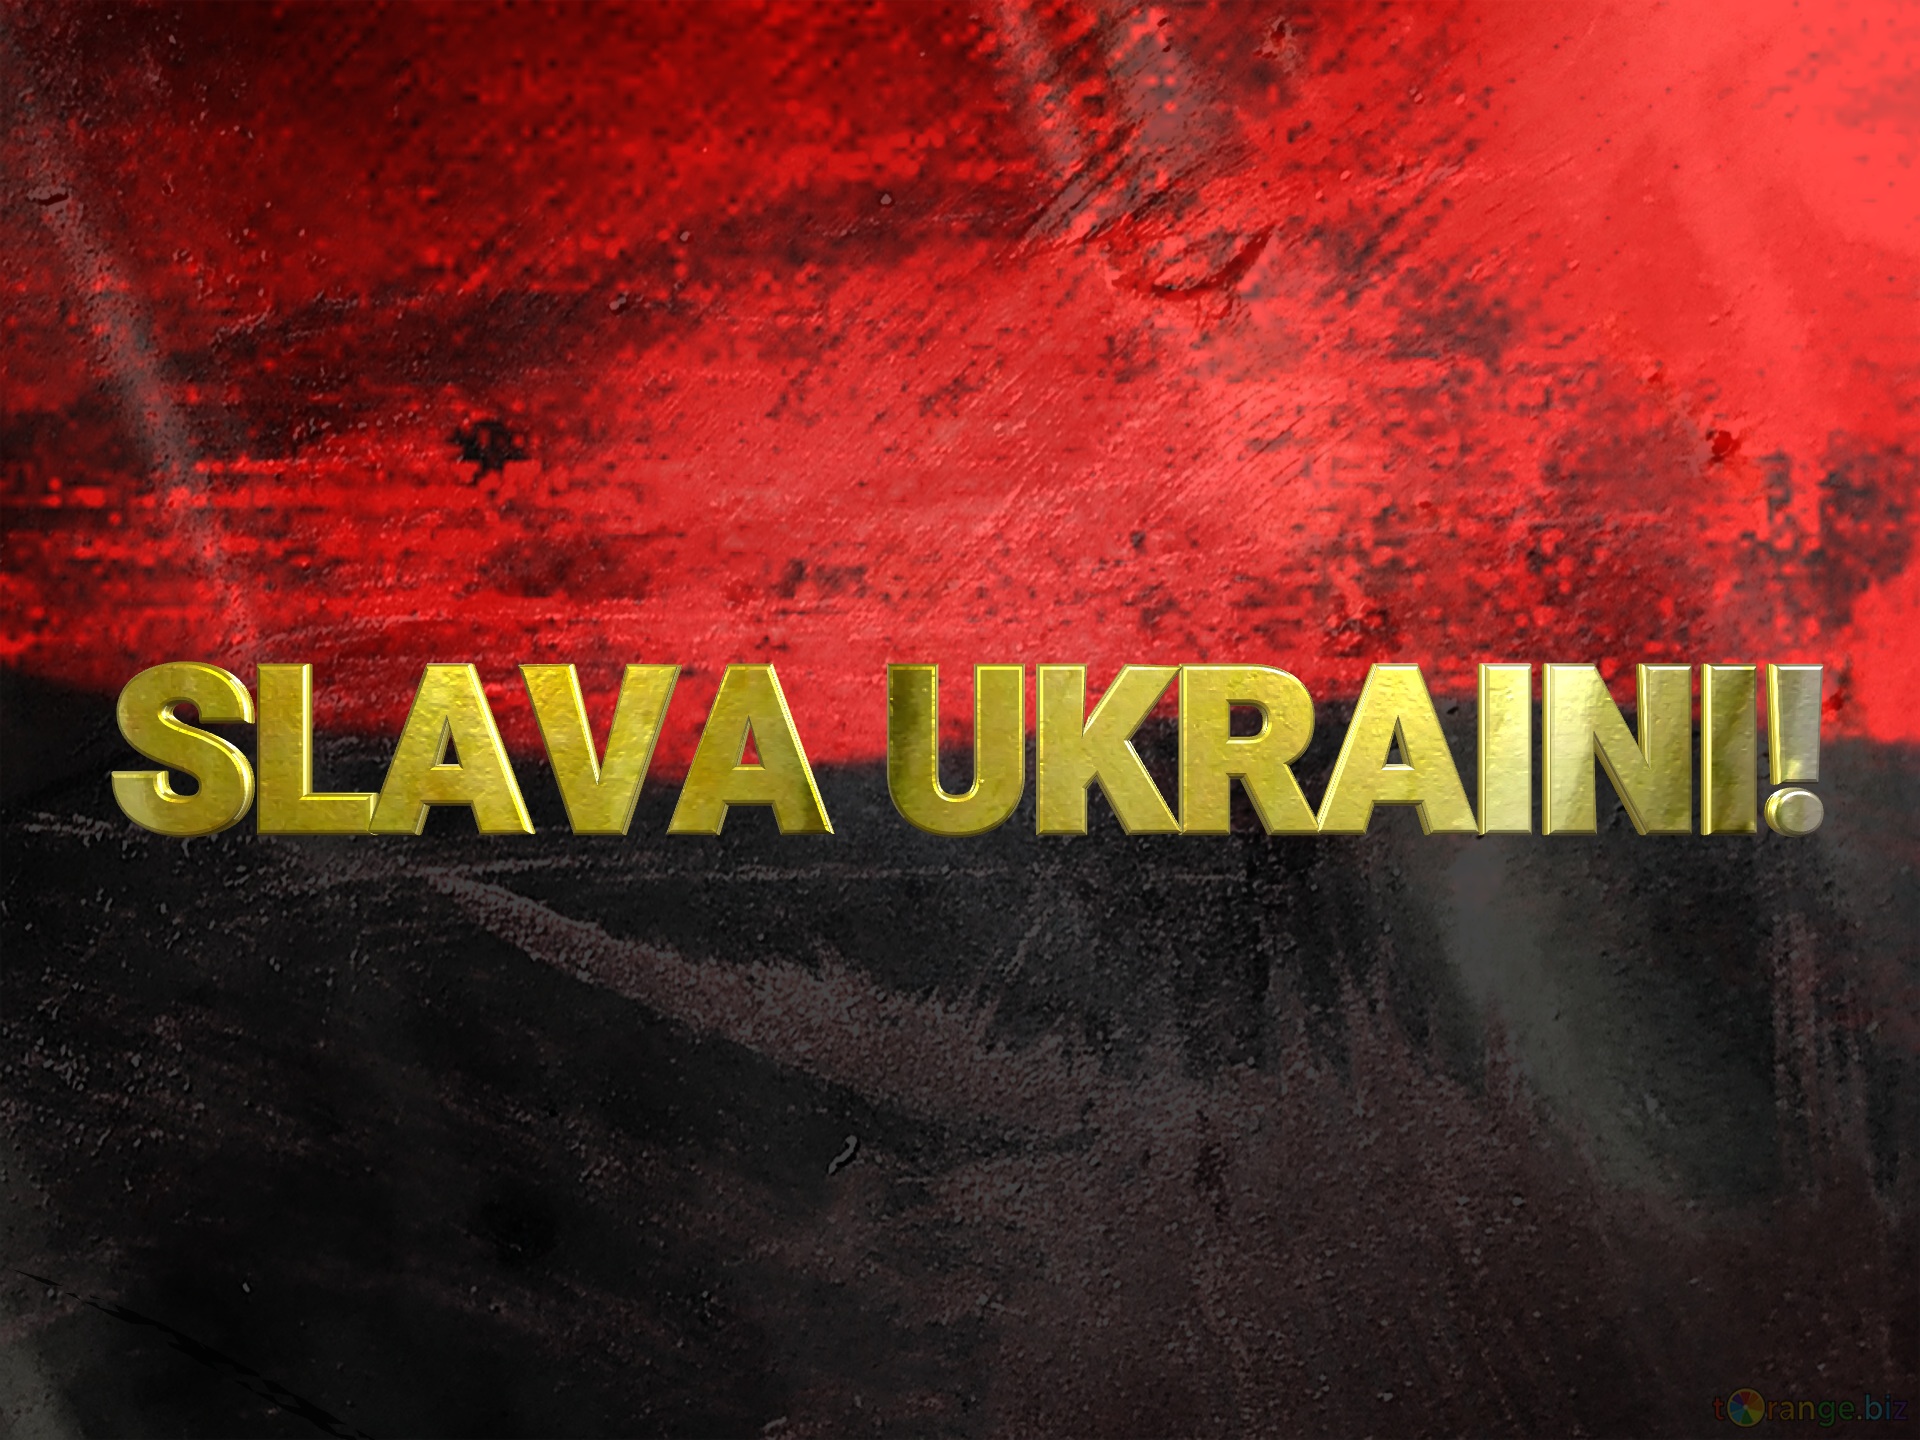  SLAVA UKRAINI!  Strong texture №56211